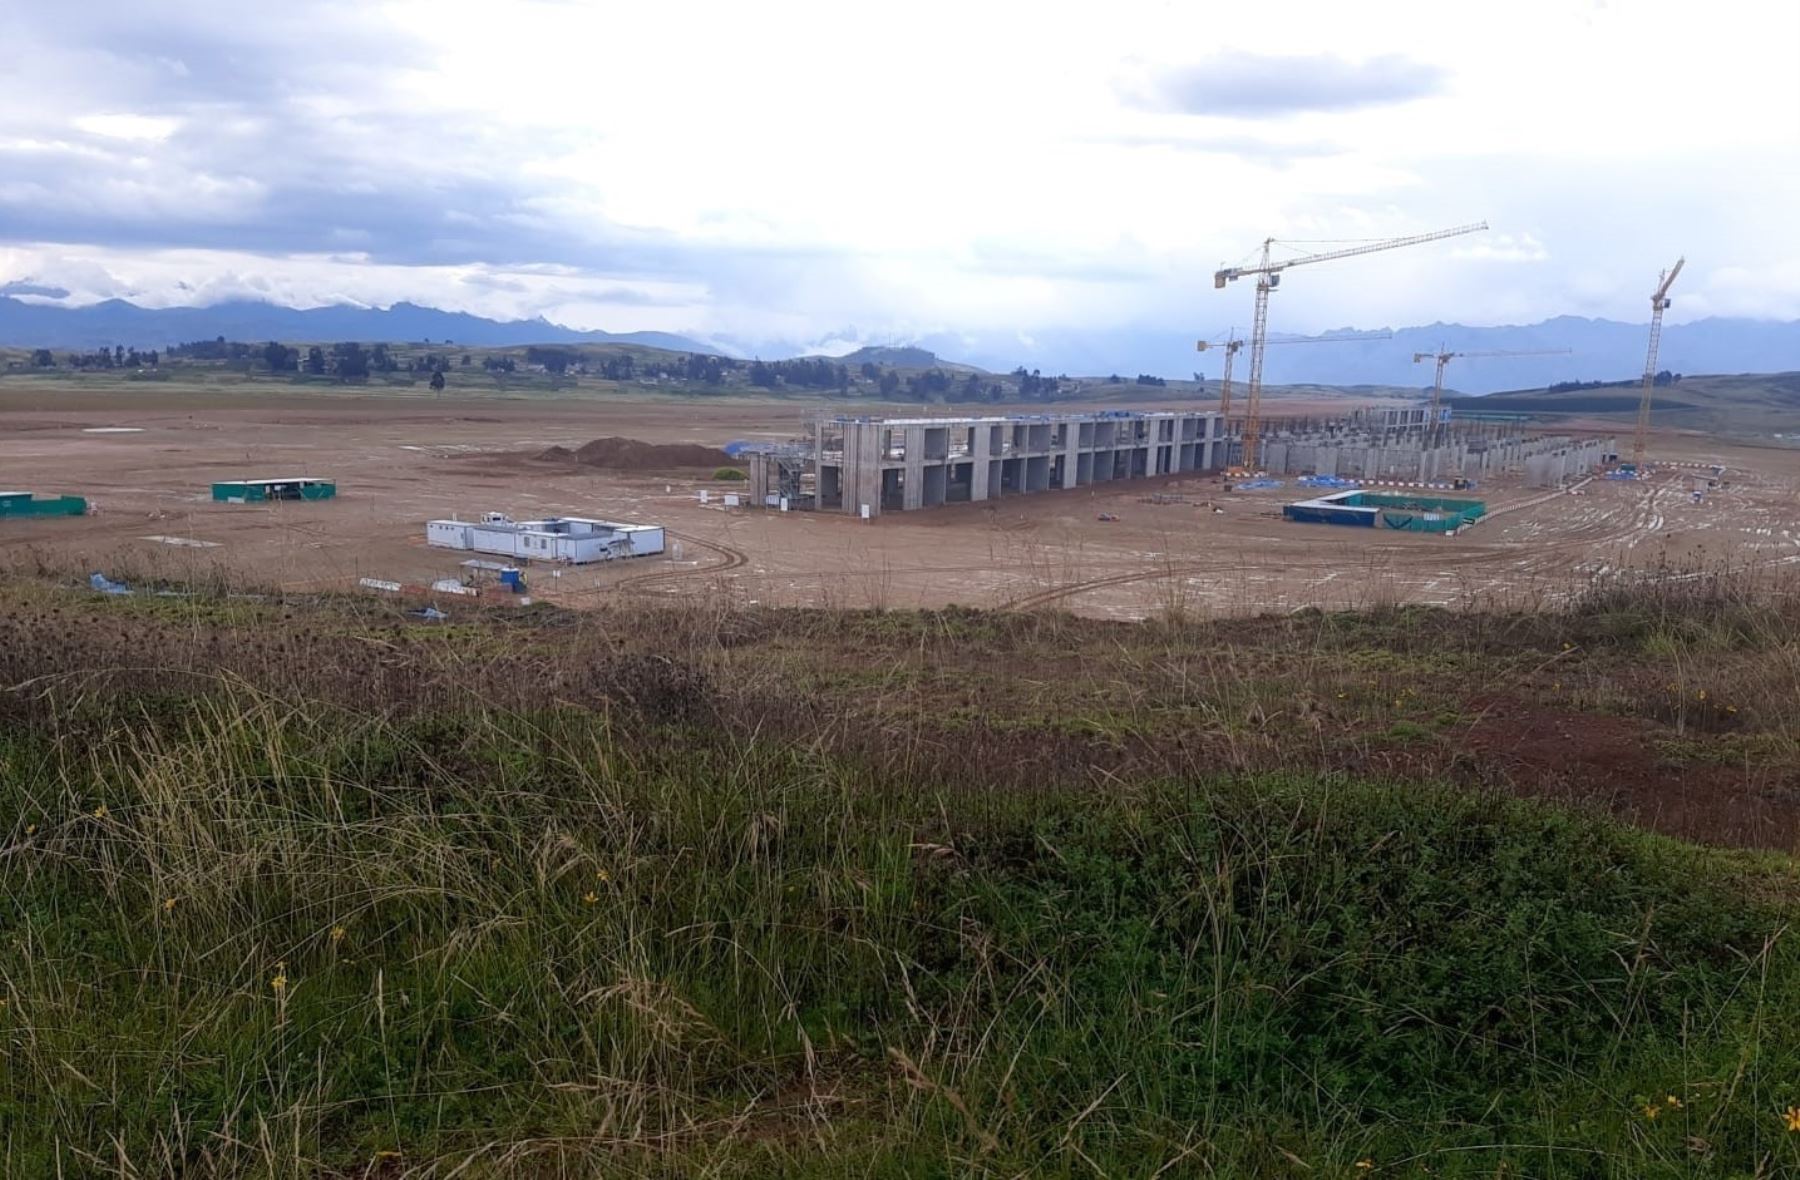 La Contraloría advirtió que existe una demora en la ejecución de las obras del aeropuerto de Chinchero, en Cusco, y que este retraso podría afectar el cumplimiento de la conclusión de los trabajos previstos para julio de 2025.